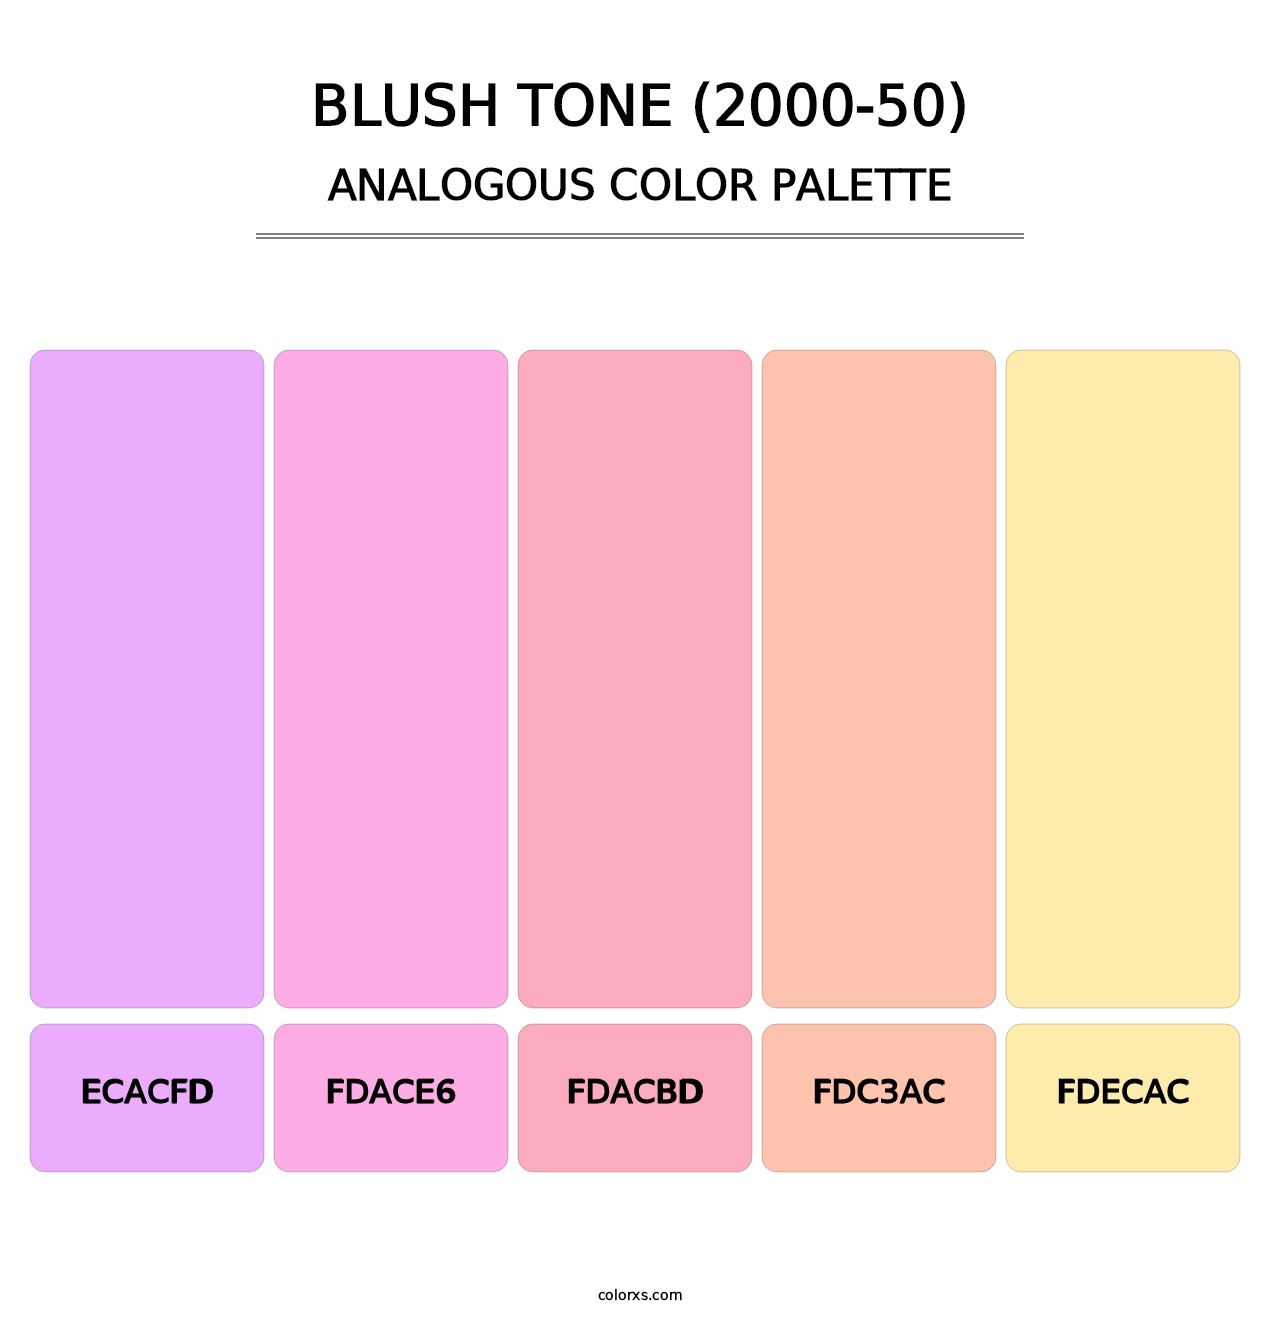 Blush Tone (2000-50) - Analogous Color Palette